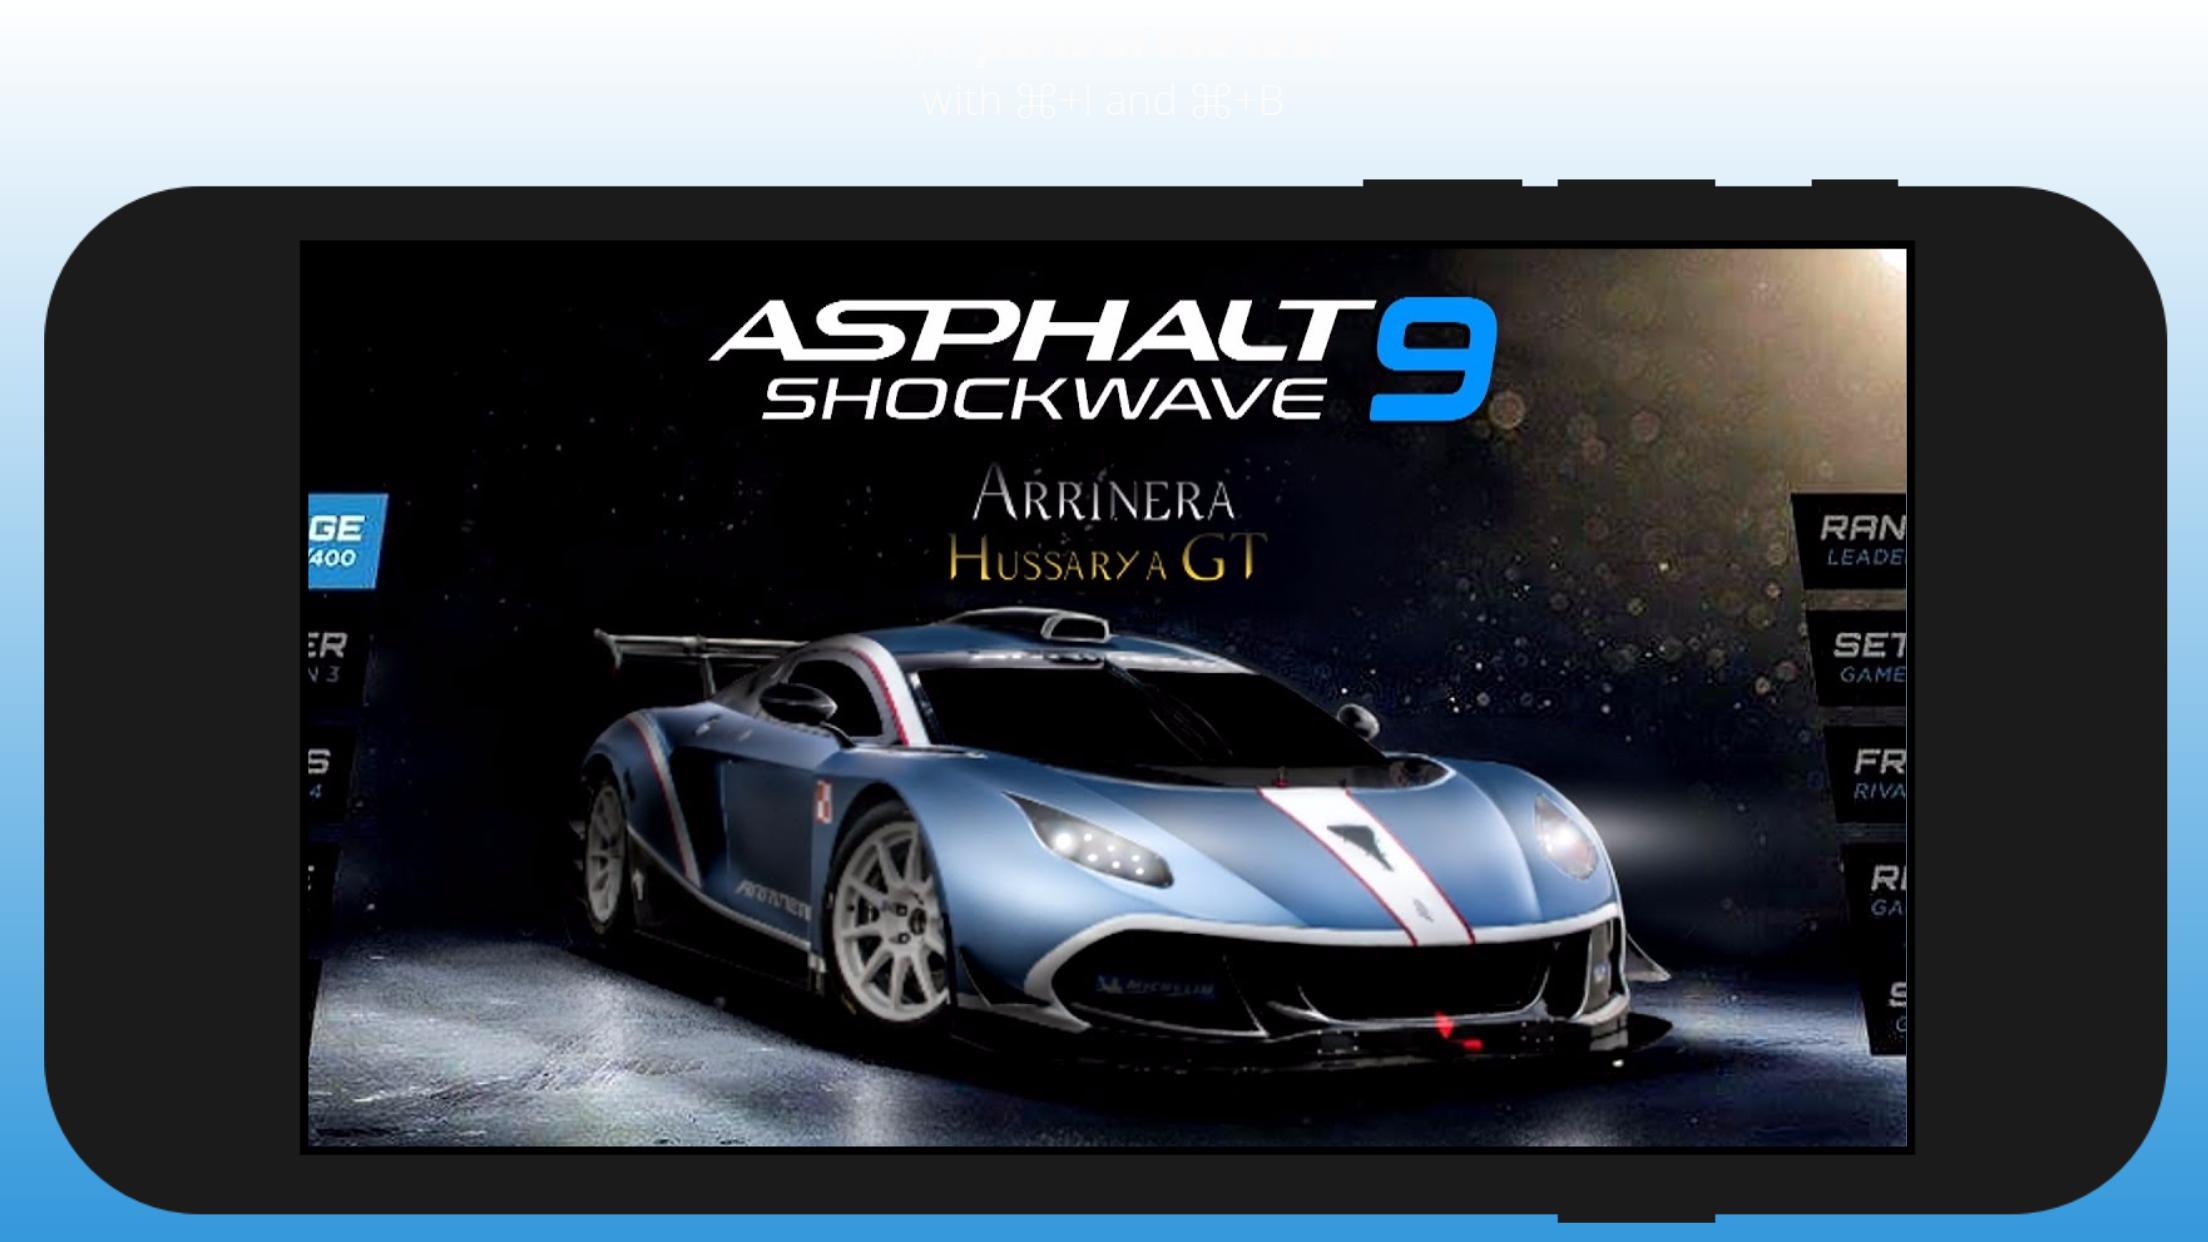 Guide Asphalt 9 Shockwave for Android APK Download